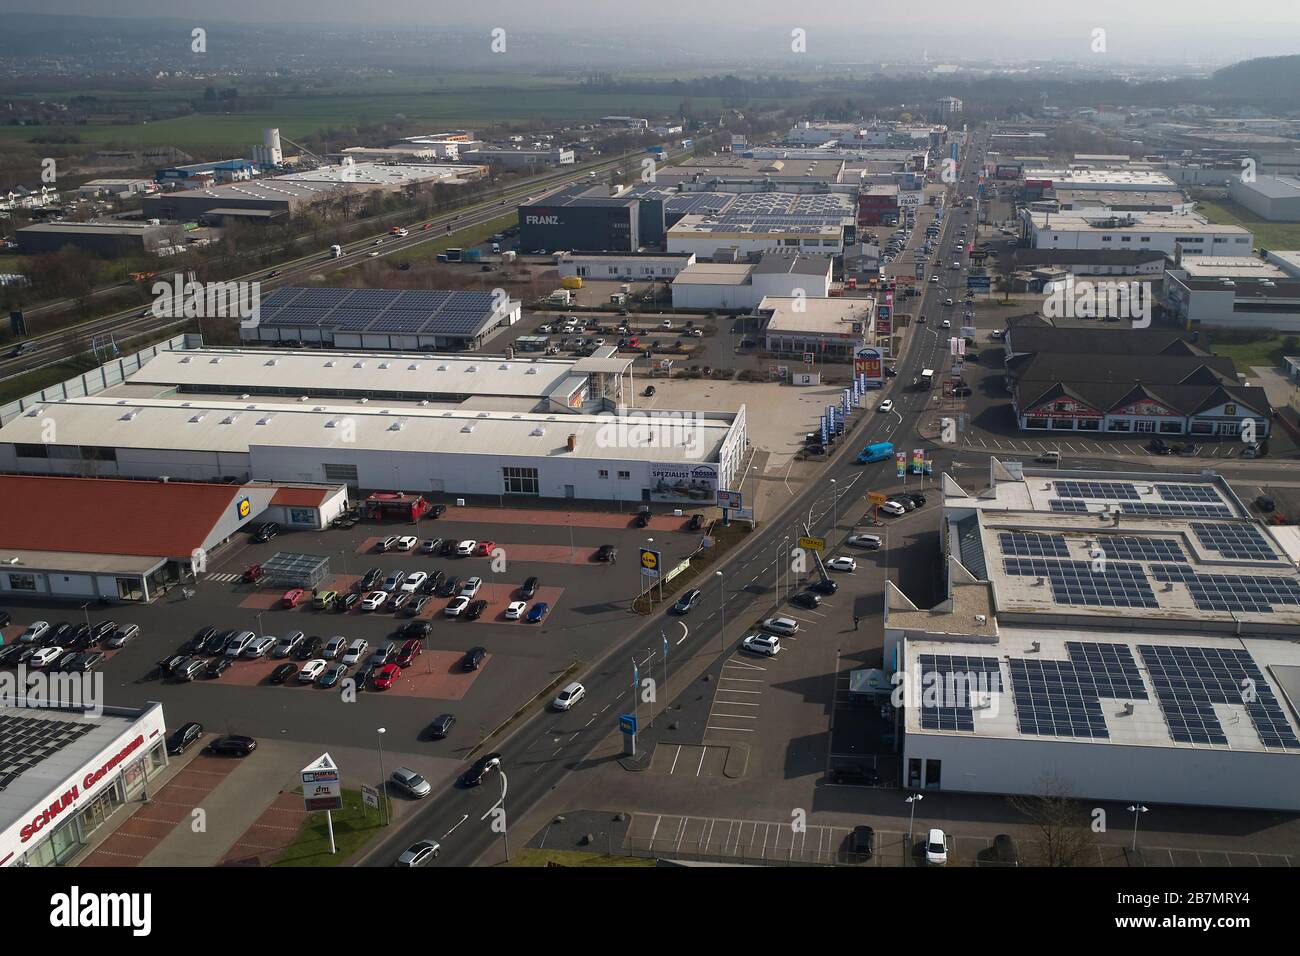 17 marzo 2020, Renania-Palatinato, Mülheim-Kärlich: Il parco industriale Mülheim-Kärlich è ancora molto occupato (vista aerea con un drone). A partire da domani, la maggior parte dei negozi che non servono ogni giorno saranno chiusi. Foto: Thomas Frey/dpa Foto Stock